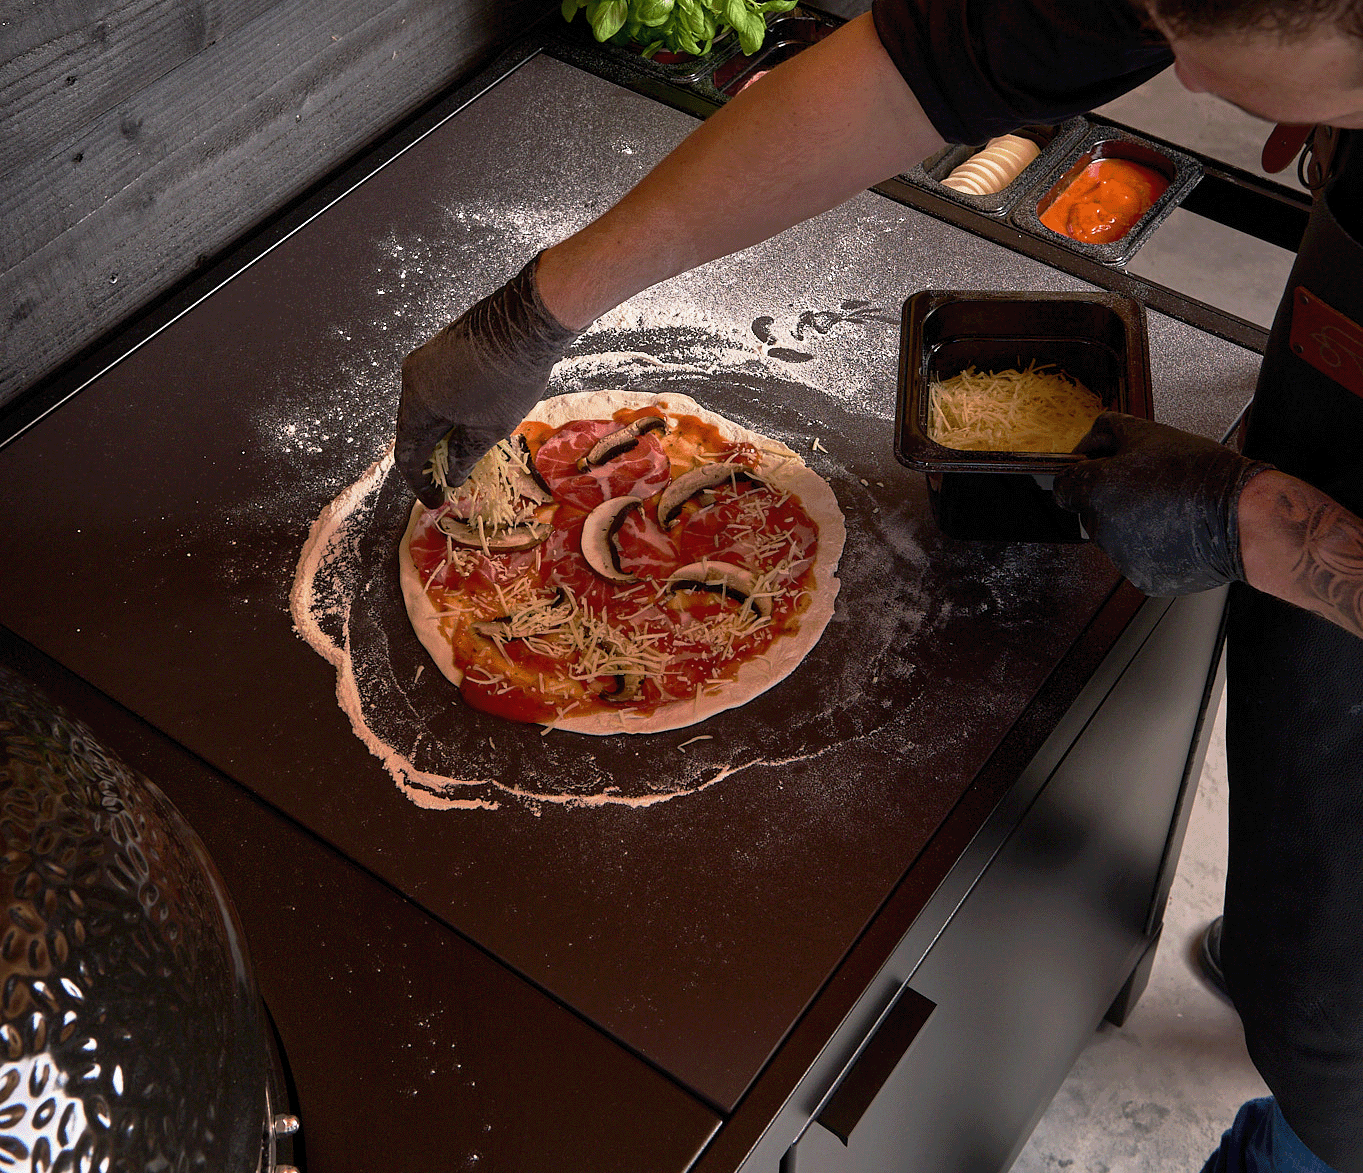 Bereiden van een pizza op het werkblad van de roostr buitenkeuken 